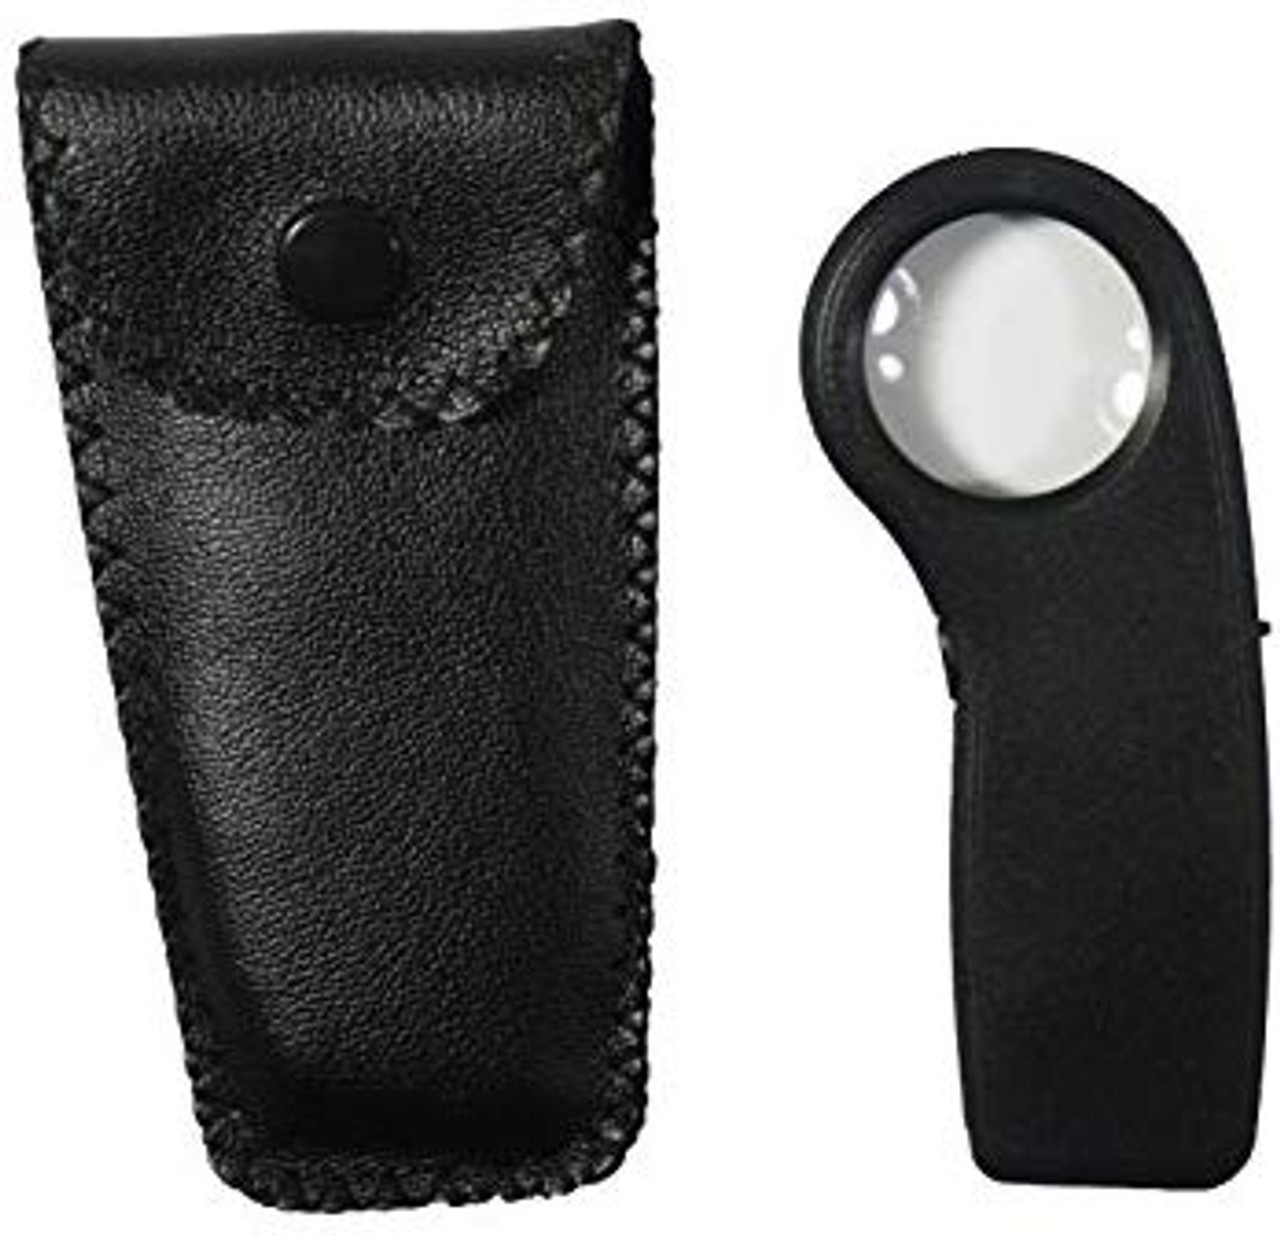 LED Lighted Pocket Magnifier 